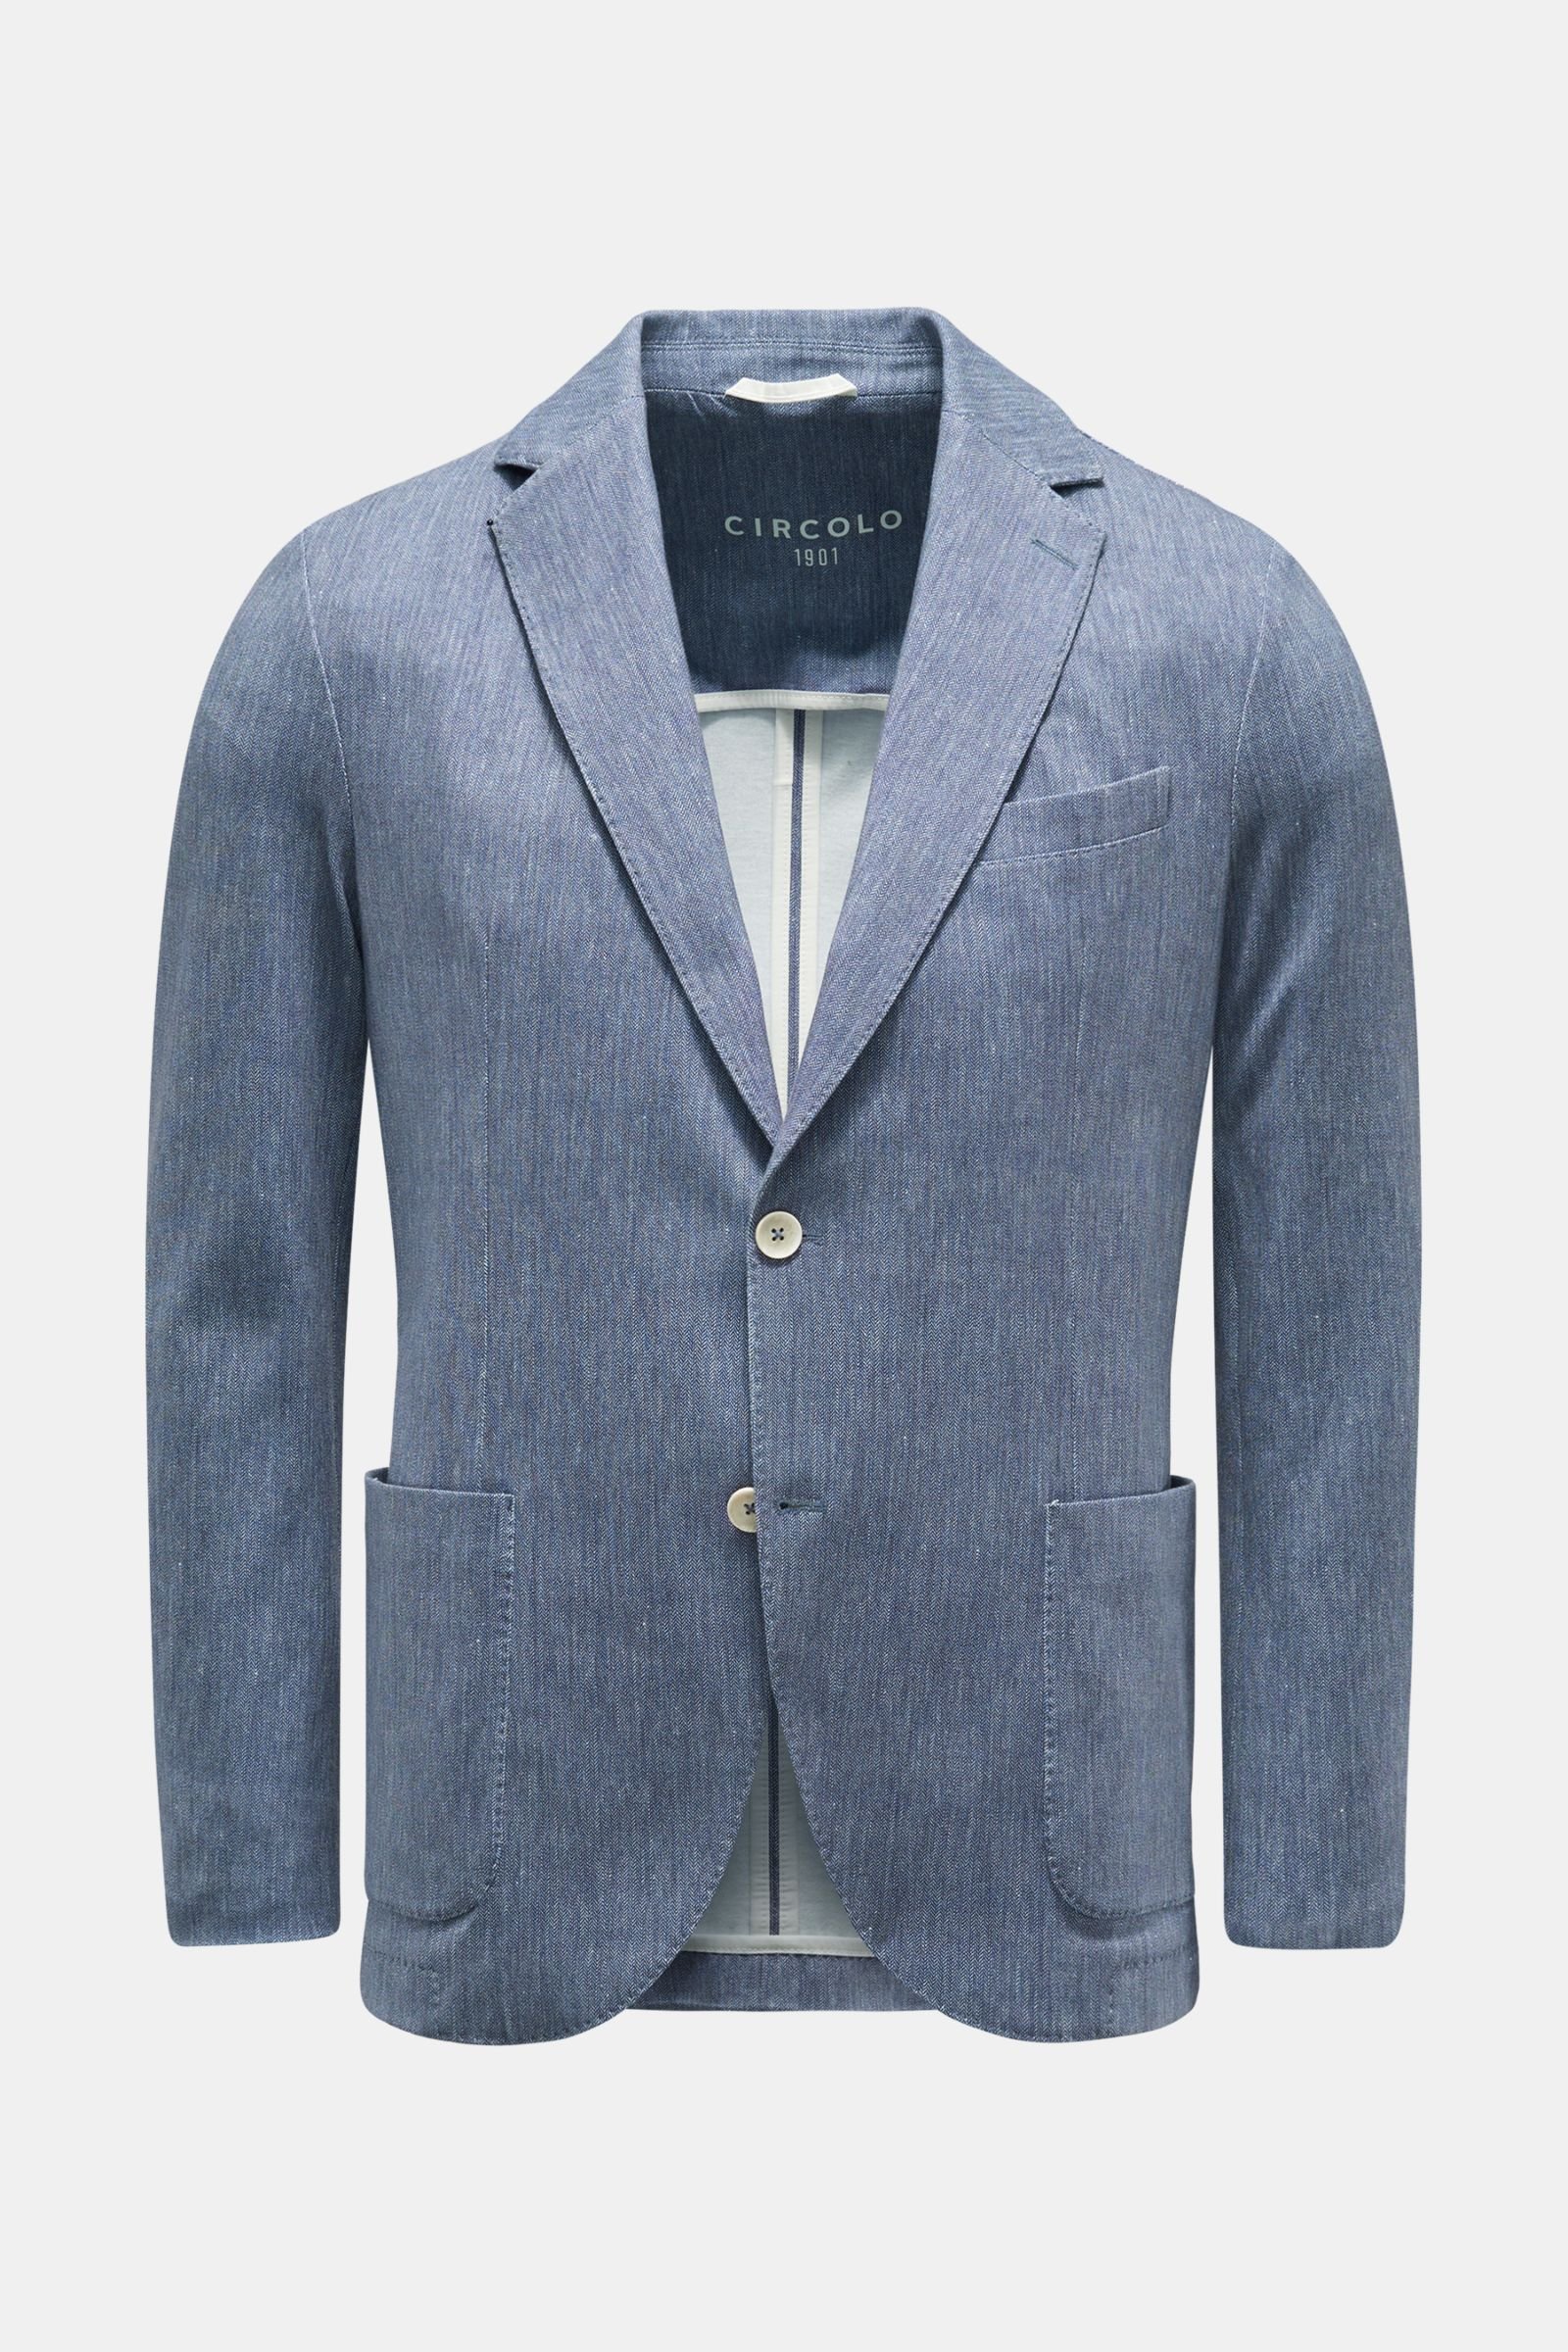 Jersey jacket grey-blue patterned